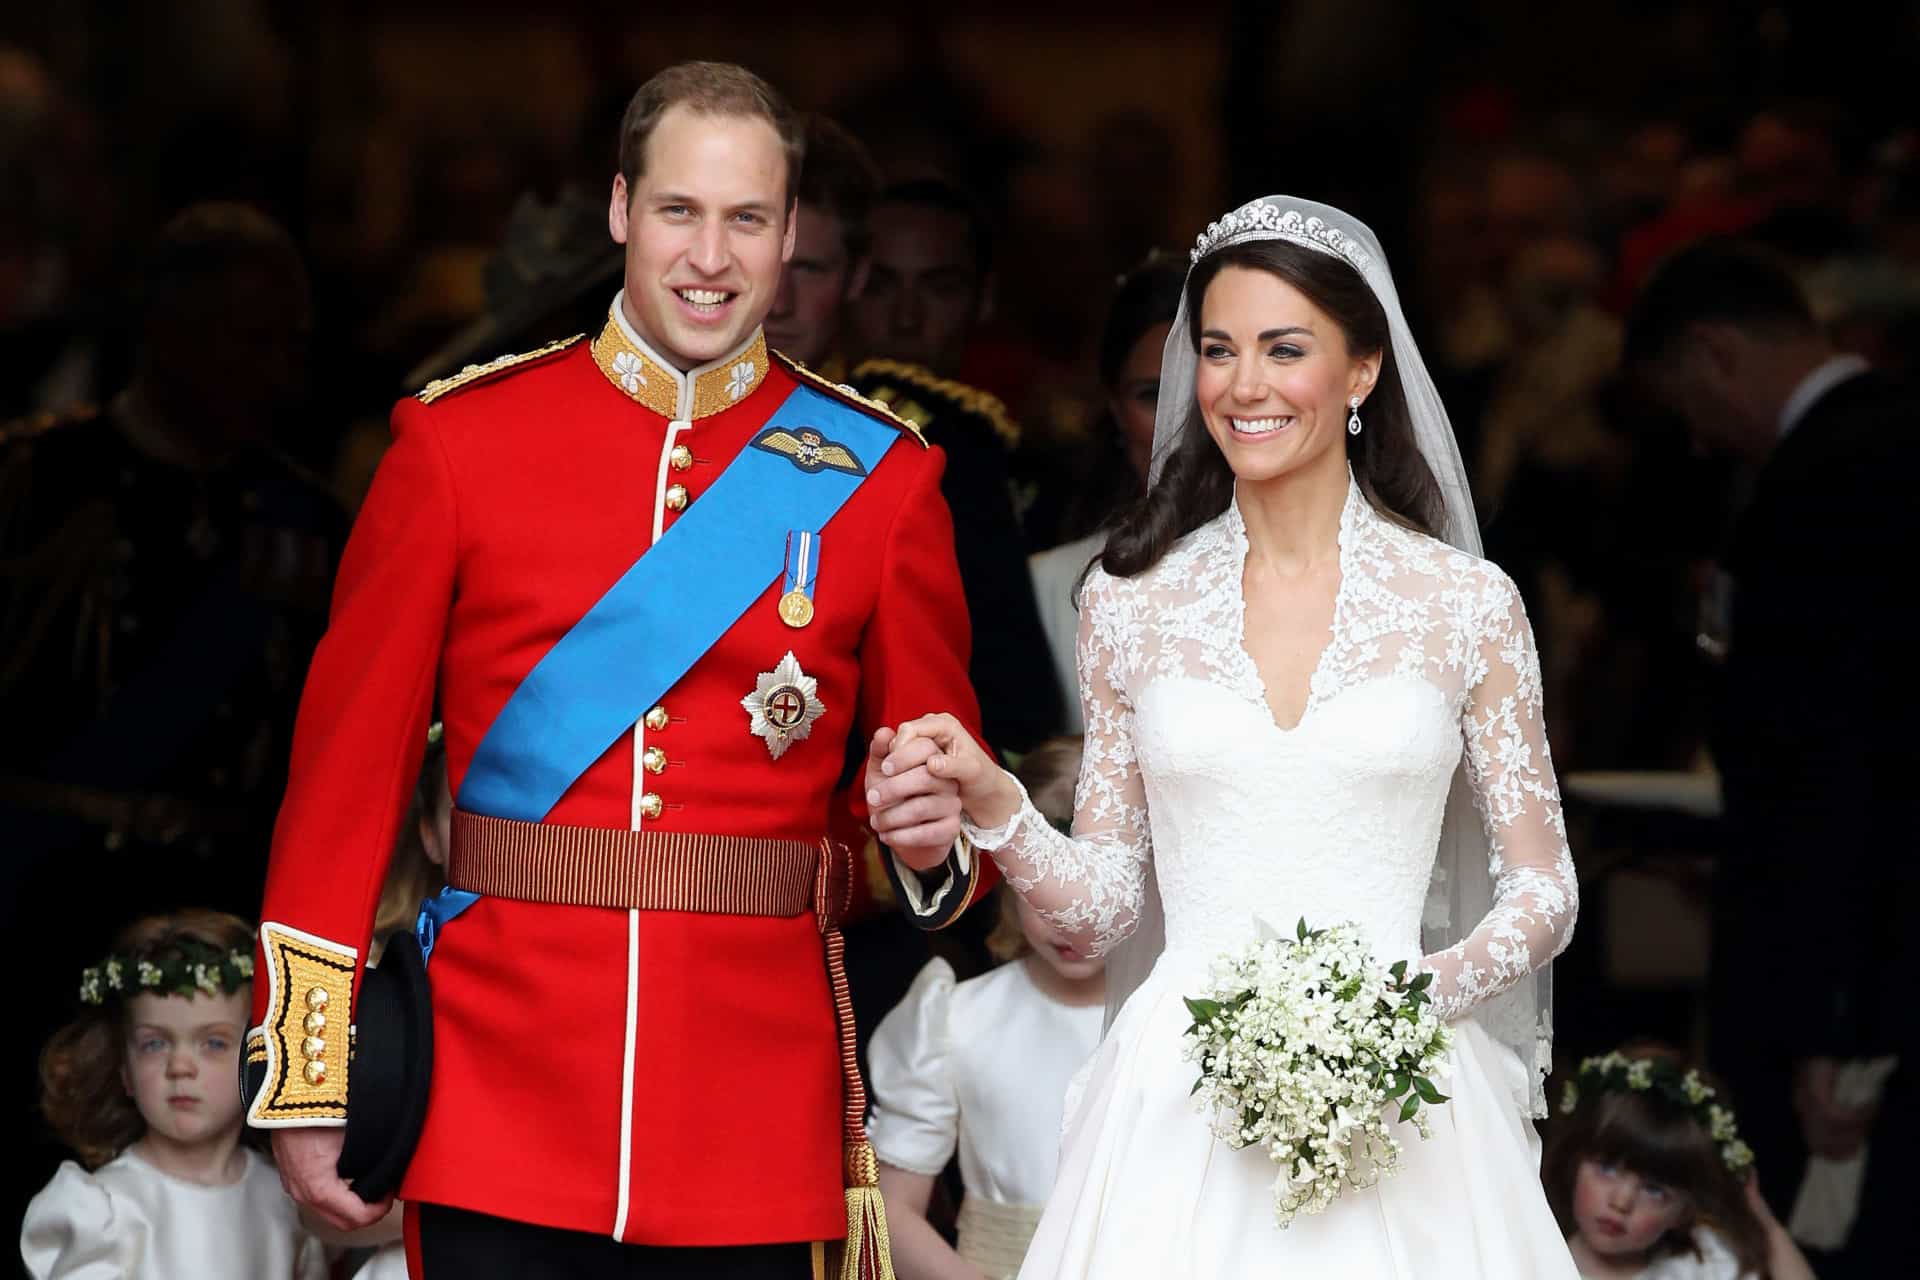 Ce moment où les fans de la famille royale du monde entier ont retenu leur souffle: un mariage royal <a href="https://fr.starsinsider.com/lifestyle/317563/mariage-royal-qui-portait-la-plus-belle-robe">dans tous les sens du terme</a>, qui a eu lieu en 2011.